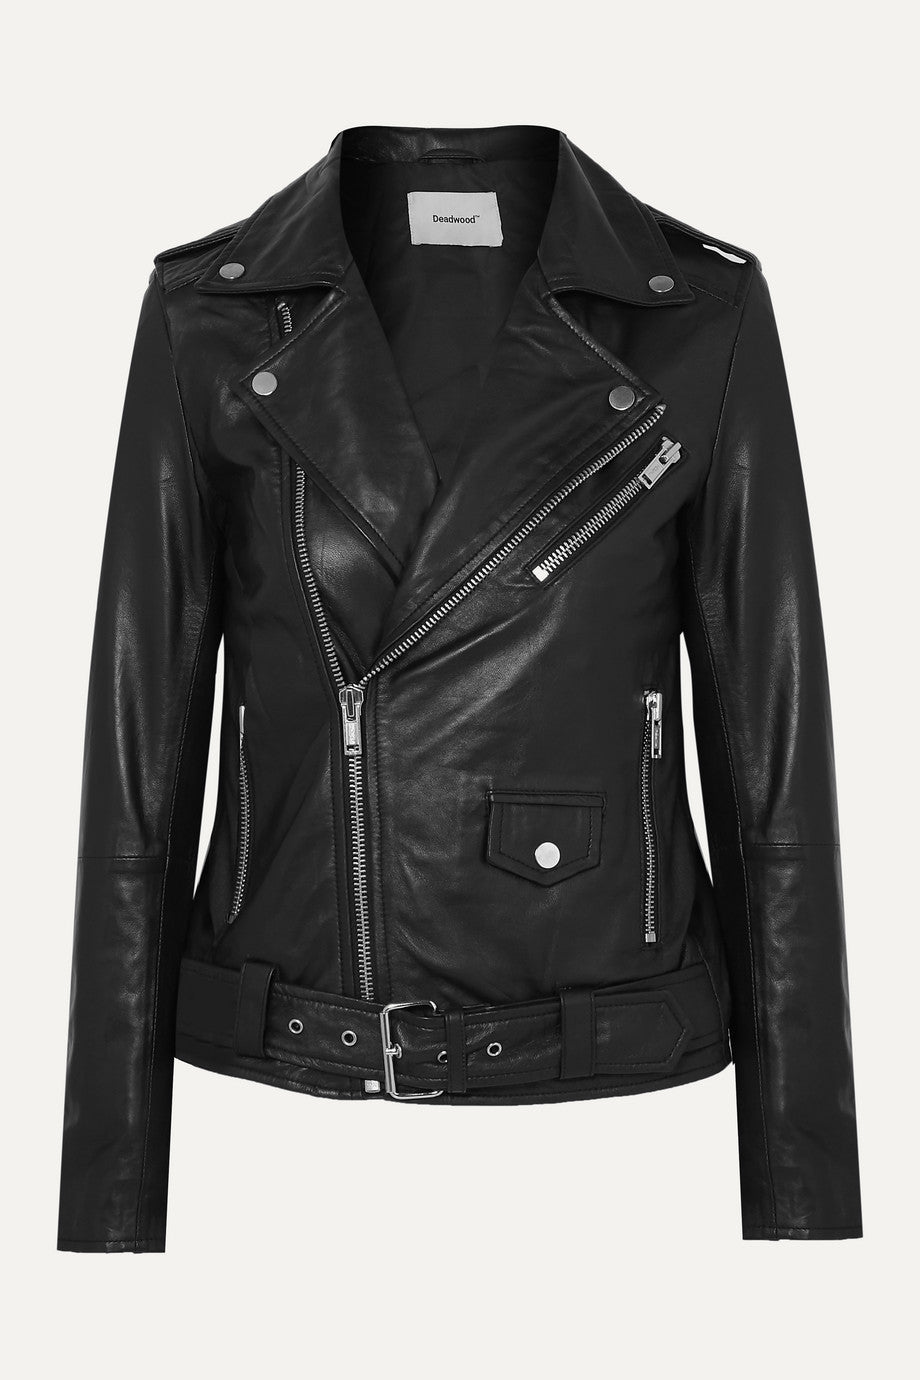 Deadwood + Net Sustain Classic Biker Leather Jacket